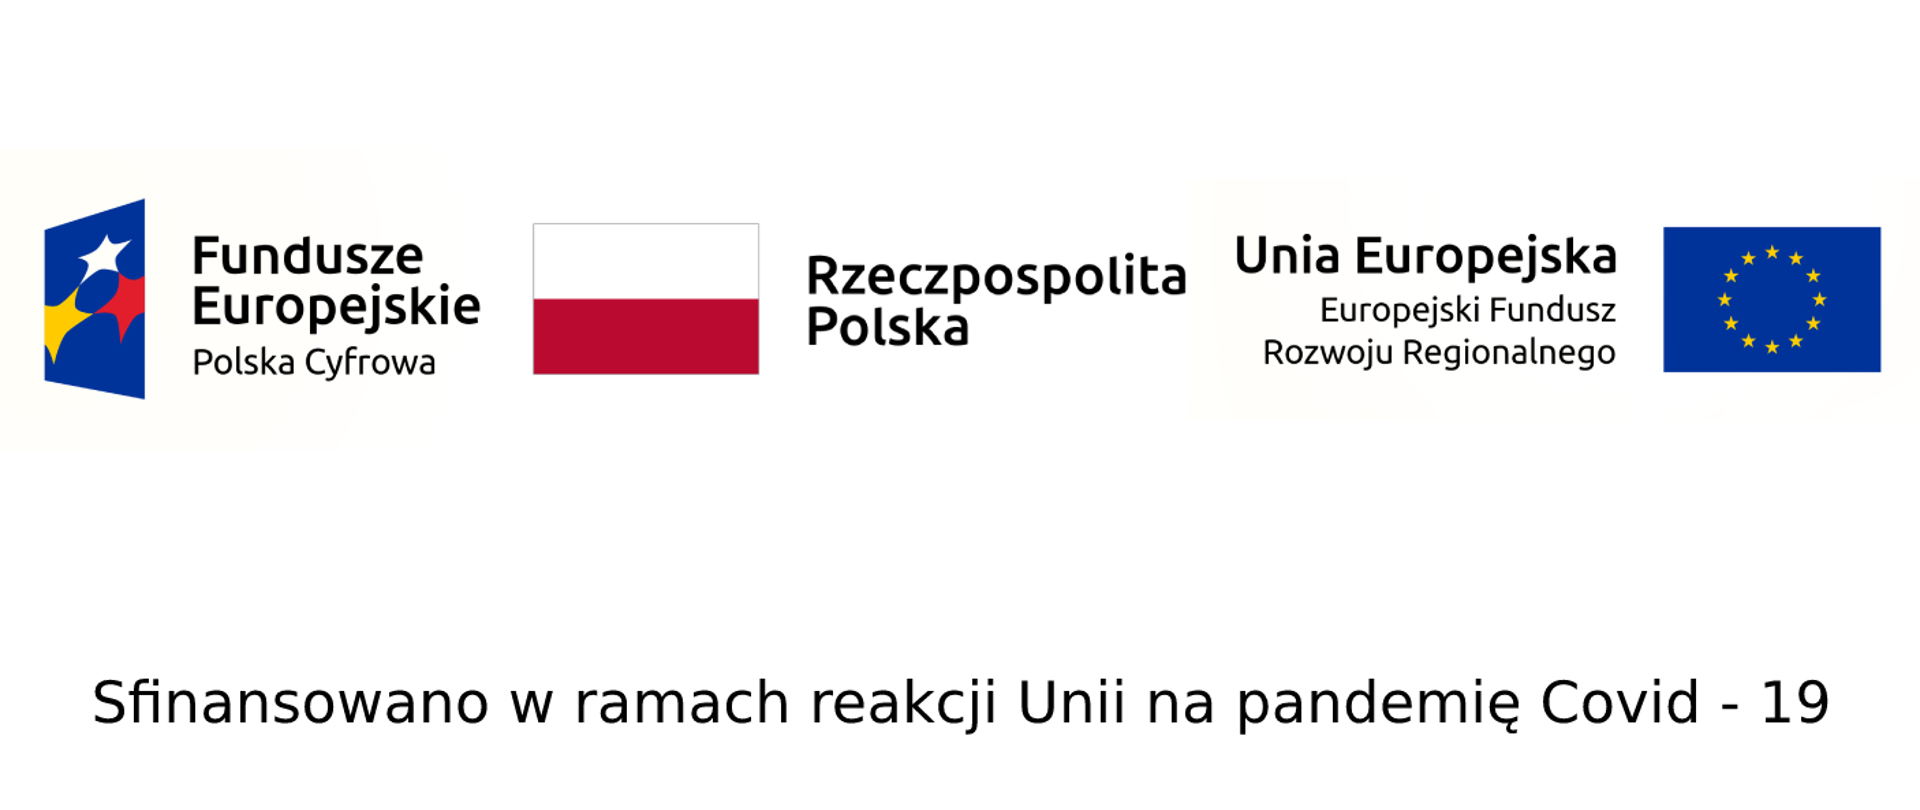 Na banerze z logotypami trzy Logotypy, od lewej: Logo Funduszy Europejskich, Flaga Polski, Flaga Unii Europejskiej, opatrzone następującymi napisami: Fundusze Europejskie - Polska Cyfrowa, Rzeczpospolita Polska, Unia Europejska Europejski Fundusz Rozwoju Regionalnego. Pod spodem podpis: sfinansowano w ramach reakcji Unii na pandemię Covid - 19